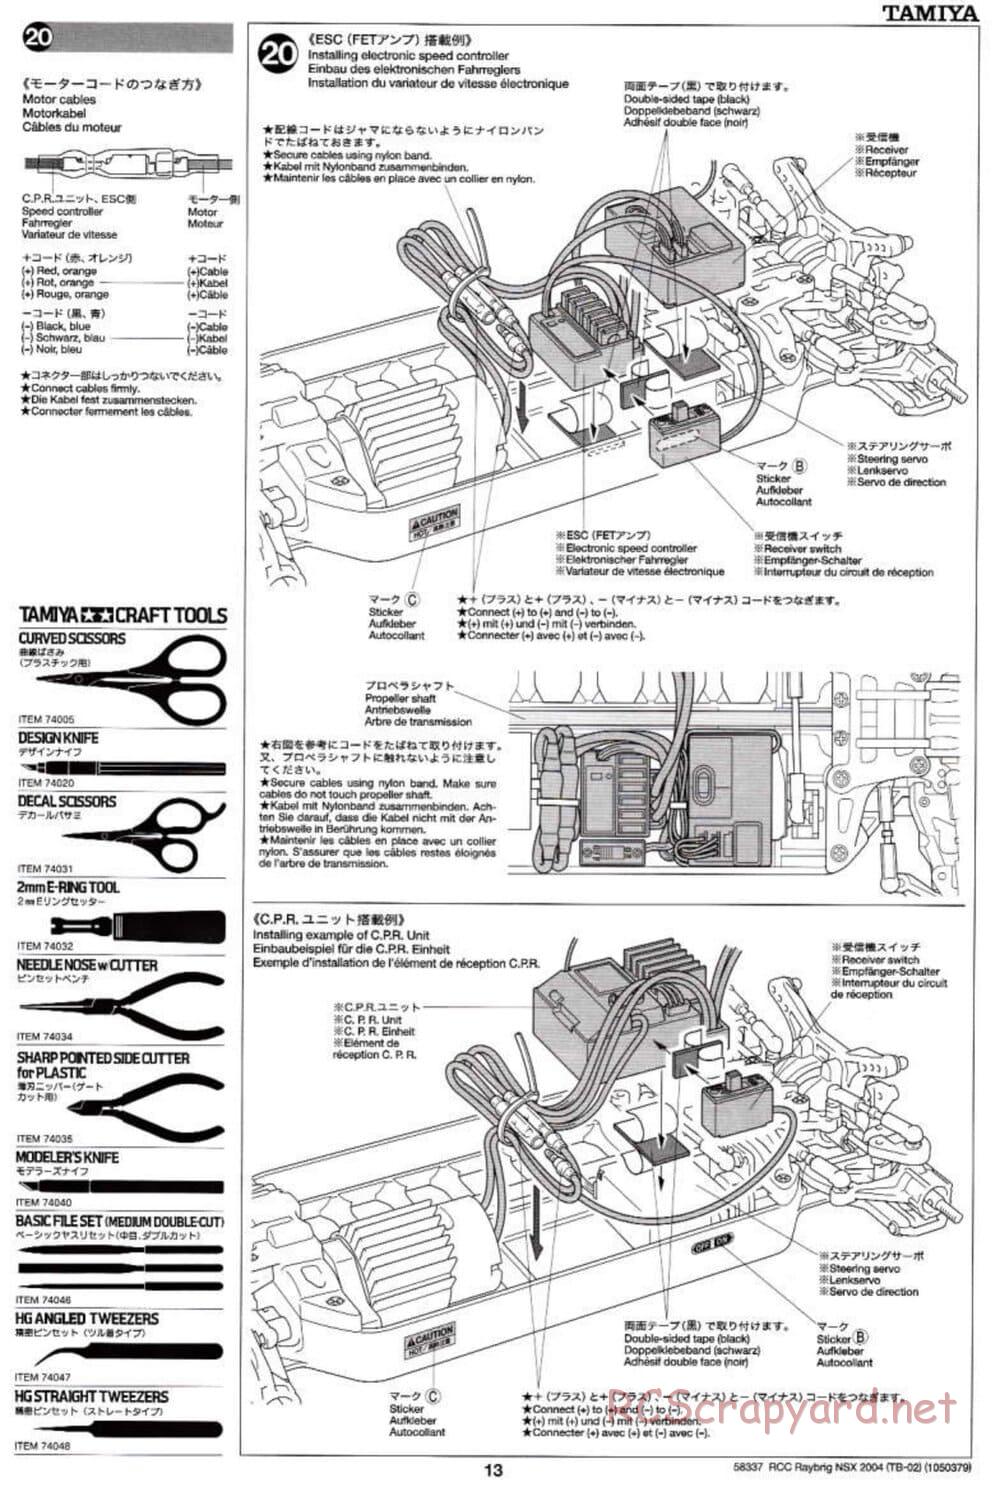 Tamiya - Raybrig NSX 2004 - TB-02 Chassis - Manual - Page 13